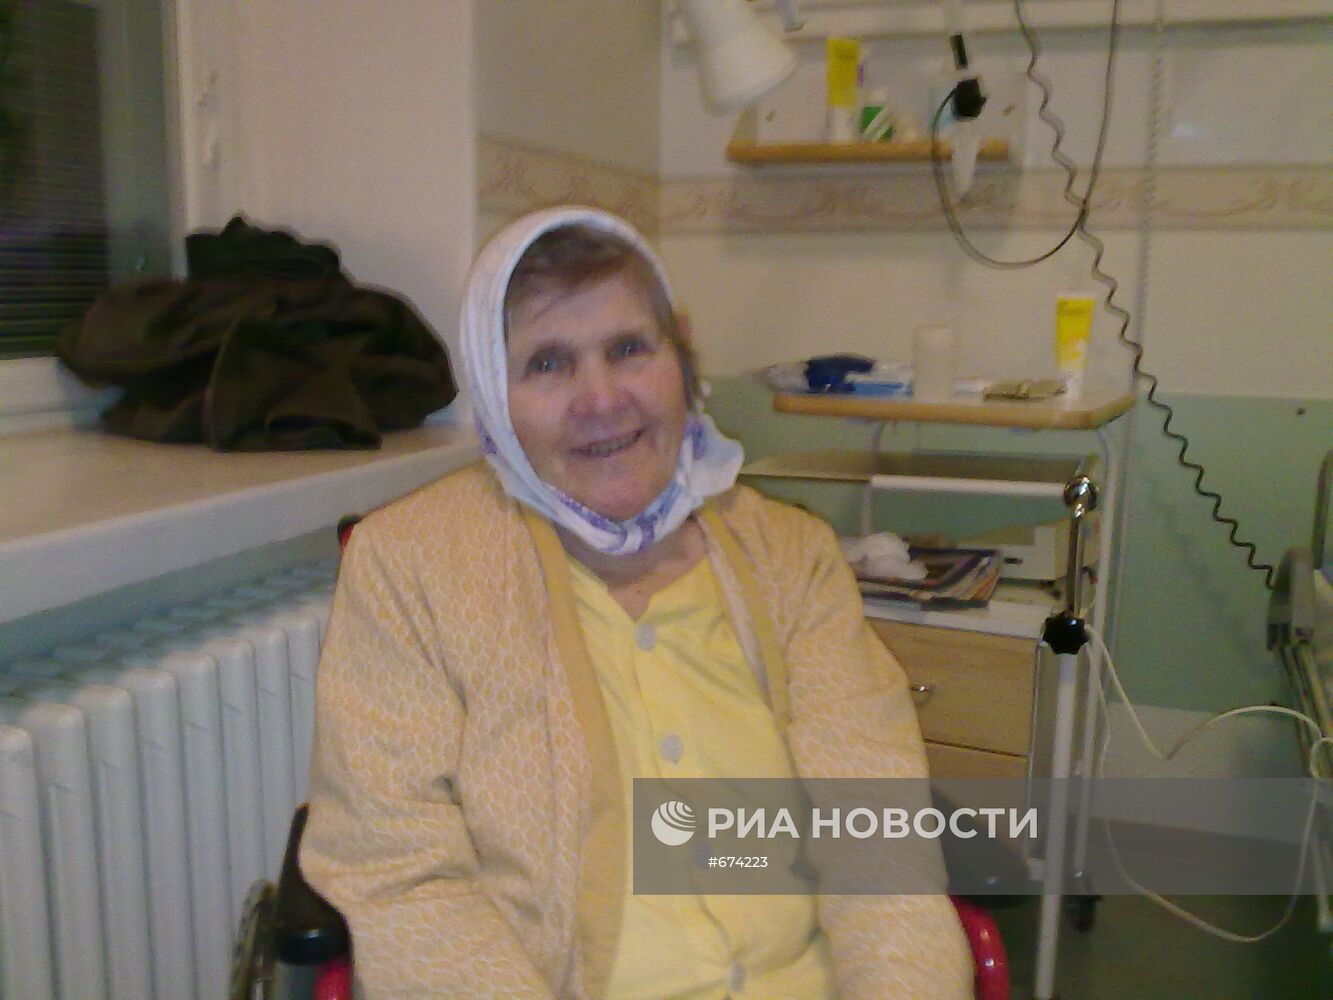 Финские власти требуют депортации 82-летней россиянки